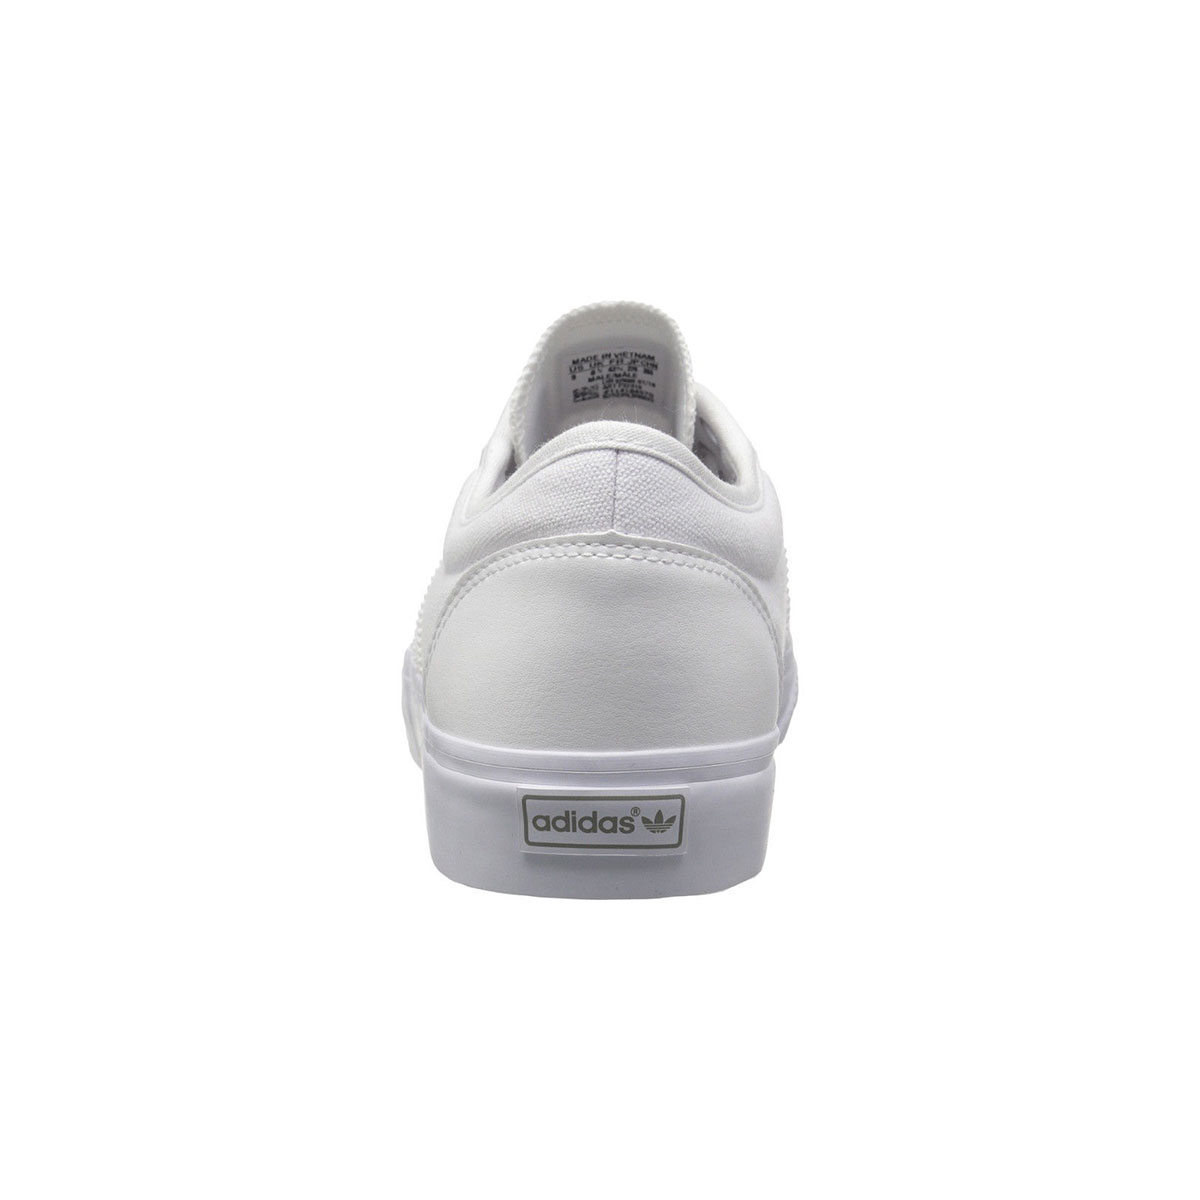 adidas Adi-Ease white  F37315